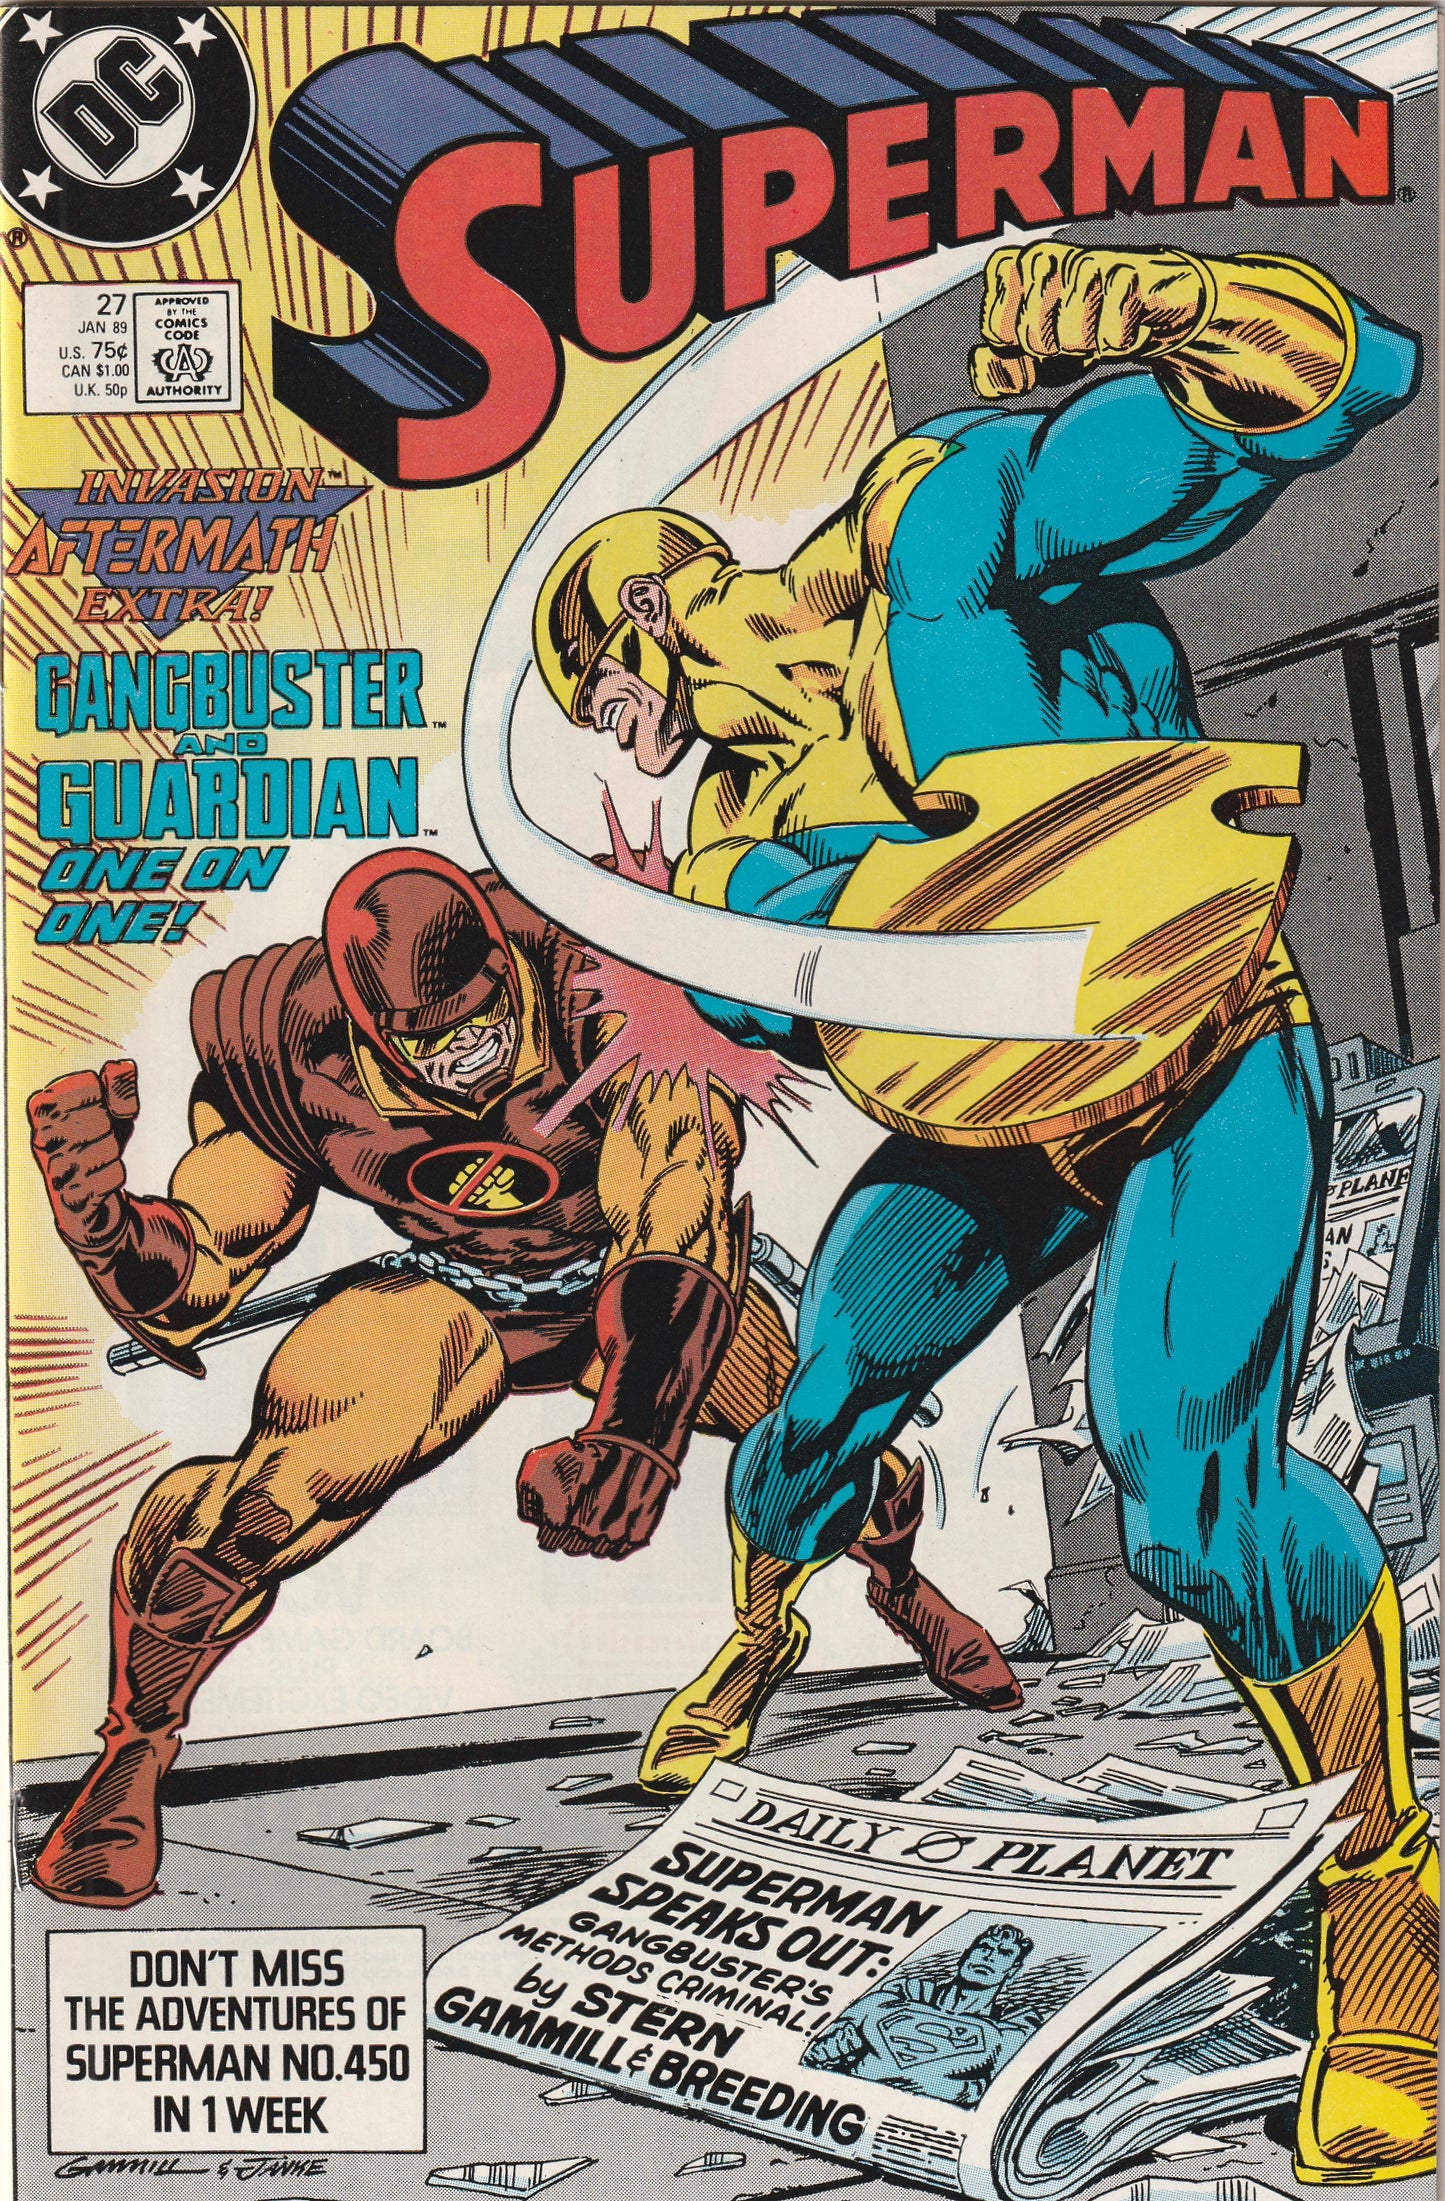 Superman #27 (Vol 2, 1989)